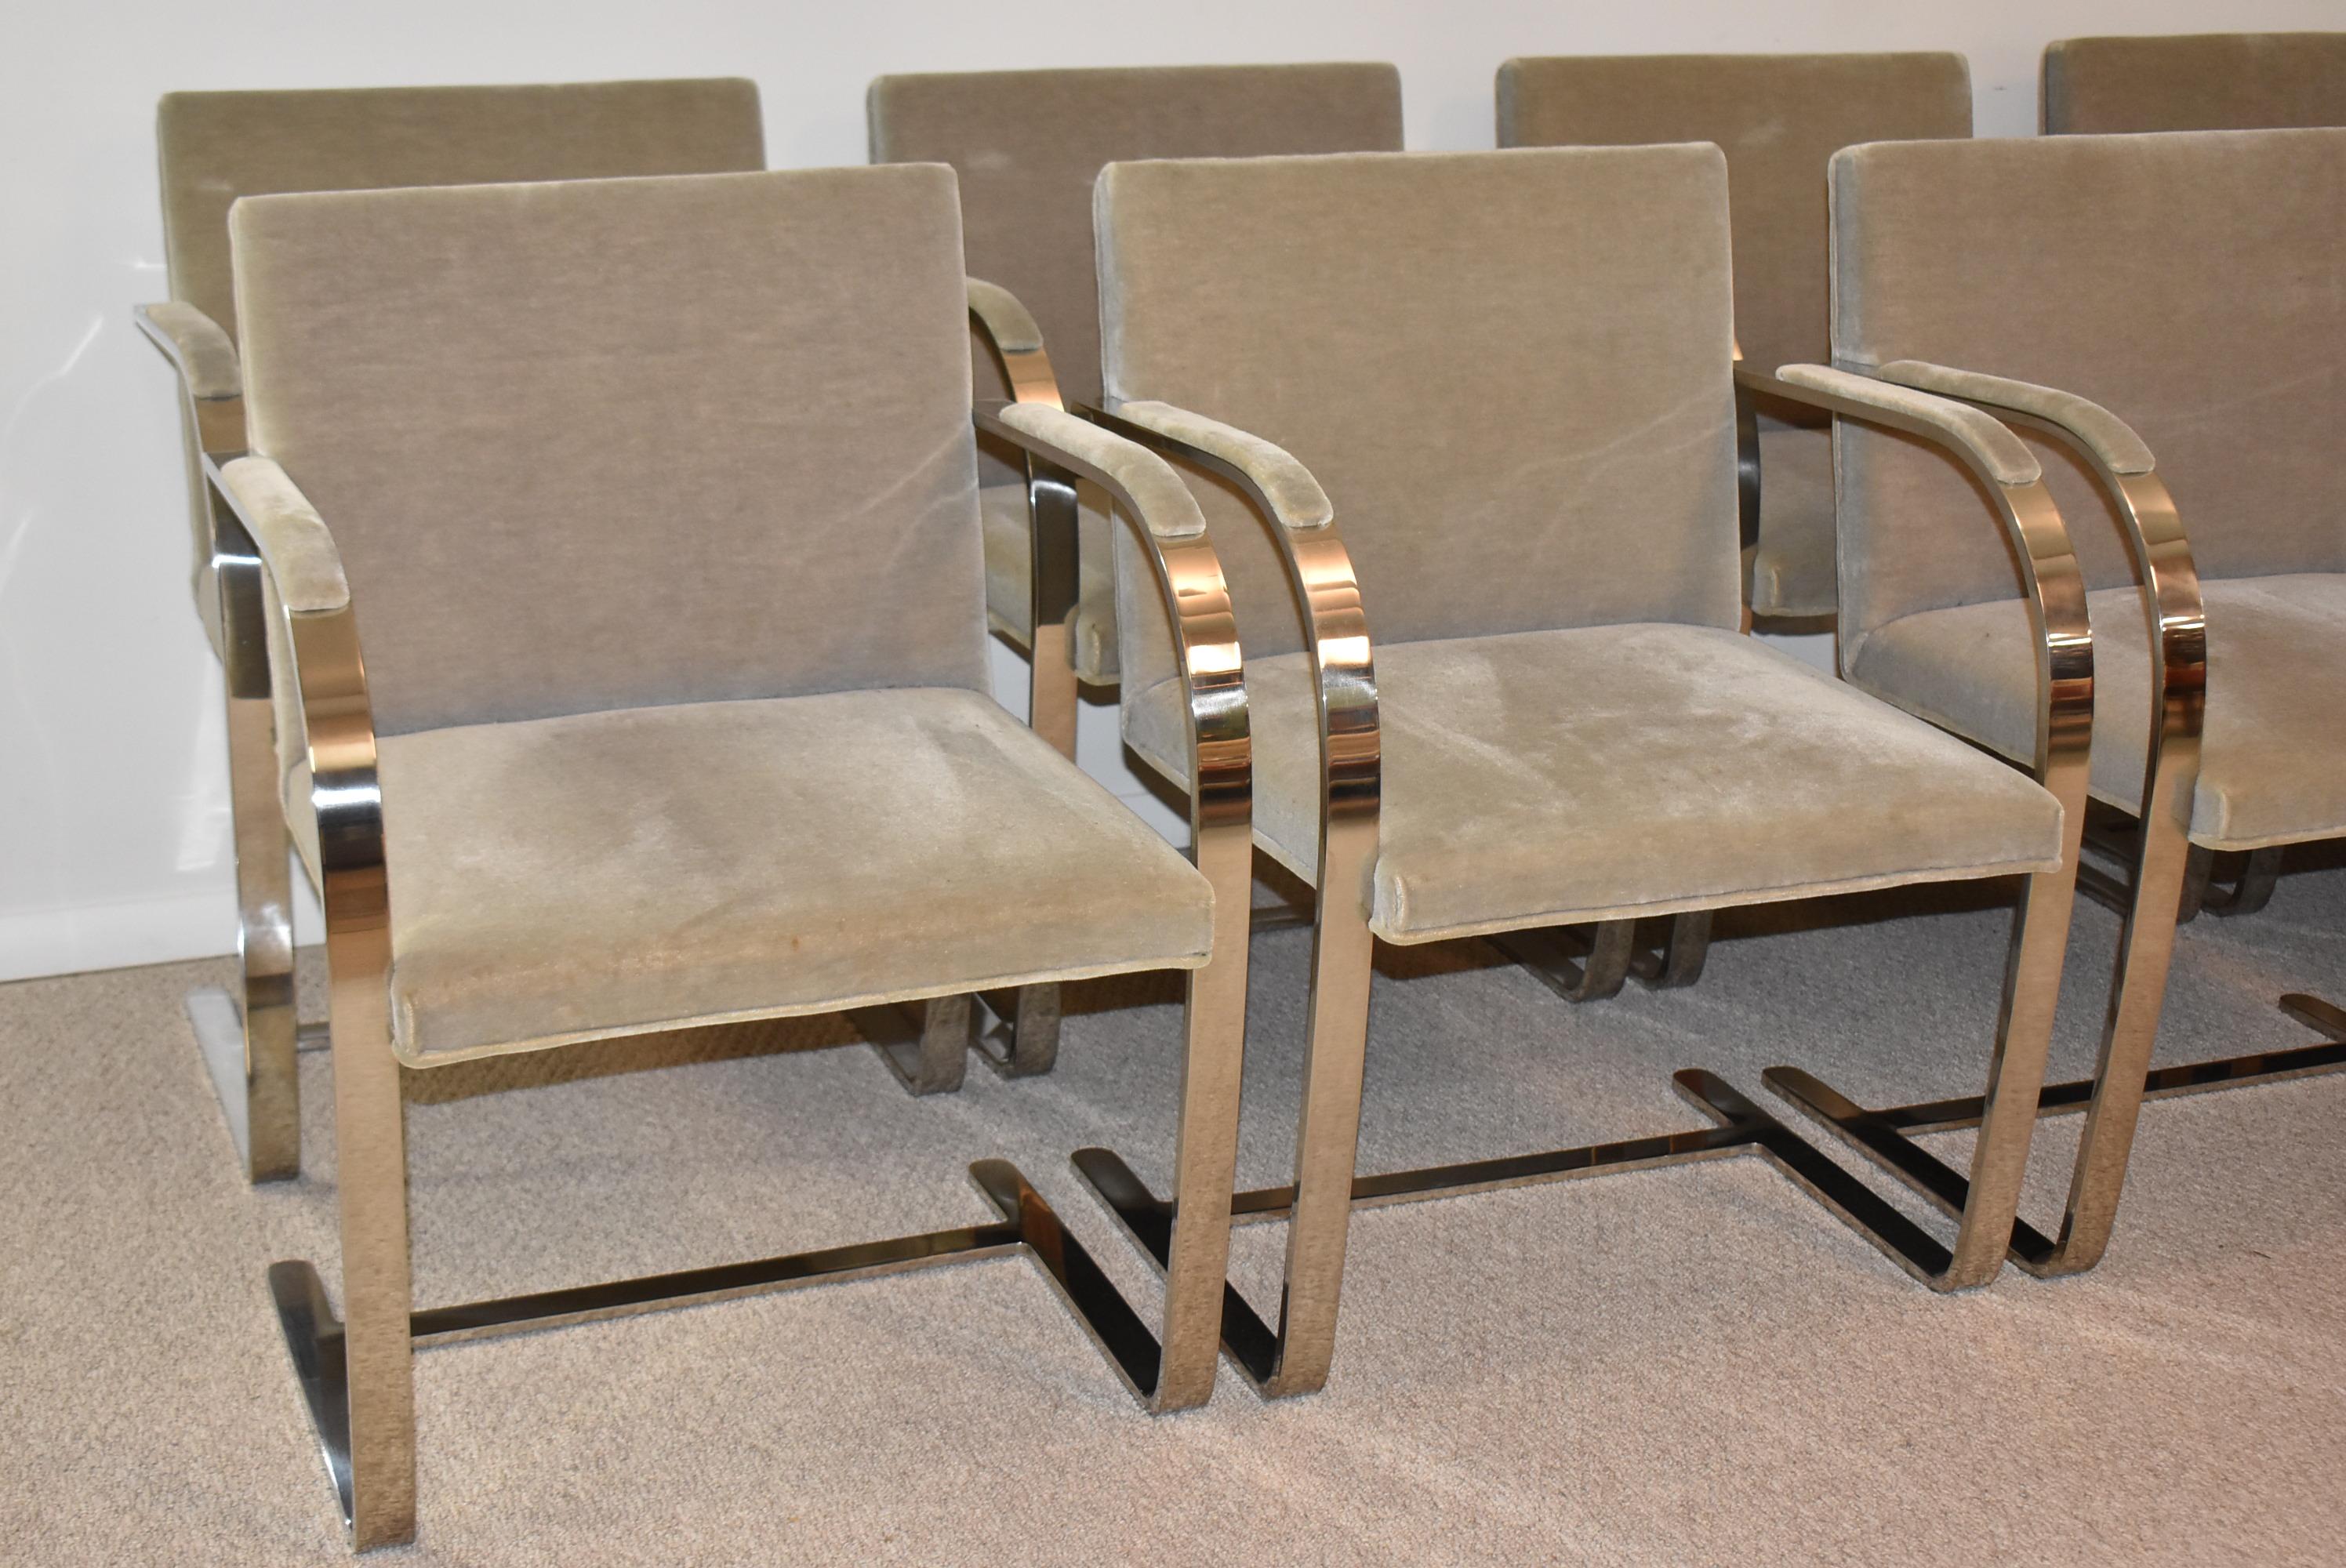 Zehn alte Mies-Van-der-Rohe-Esszimmerstühle um 1982. Original grauer Mohairstoff. Chromrahmen mit flacher Stange. 23